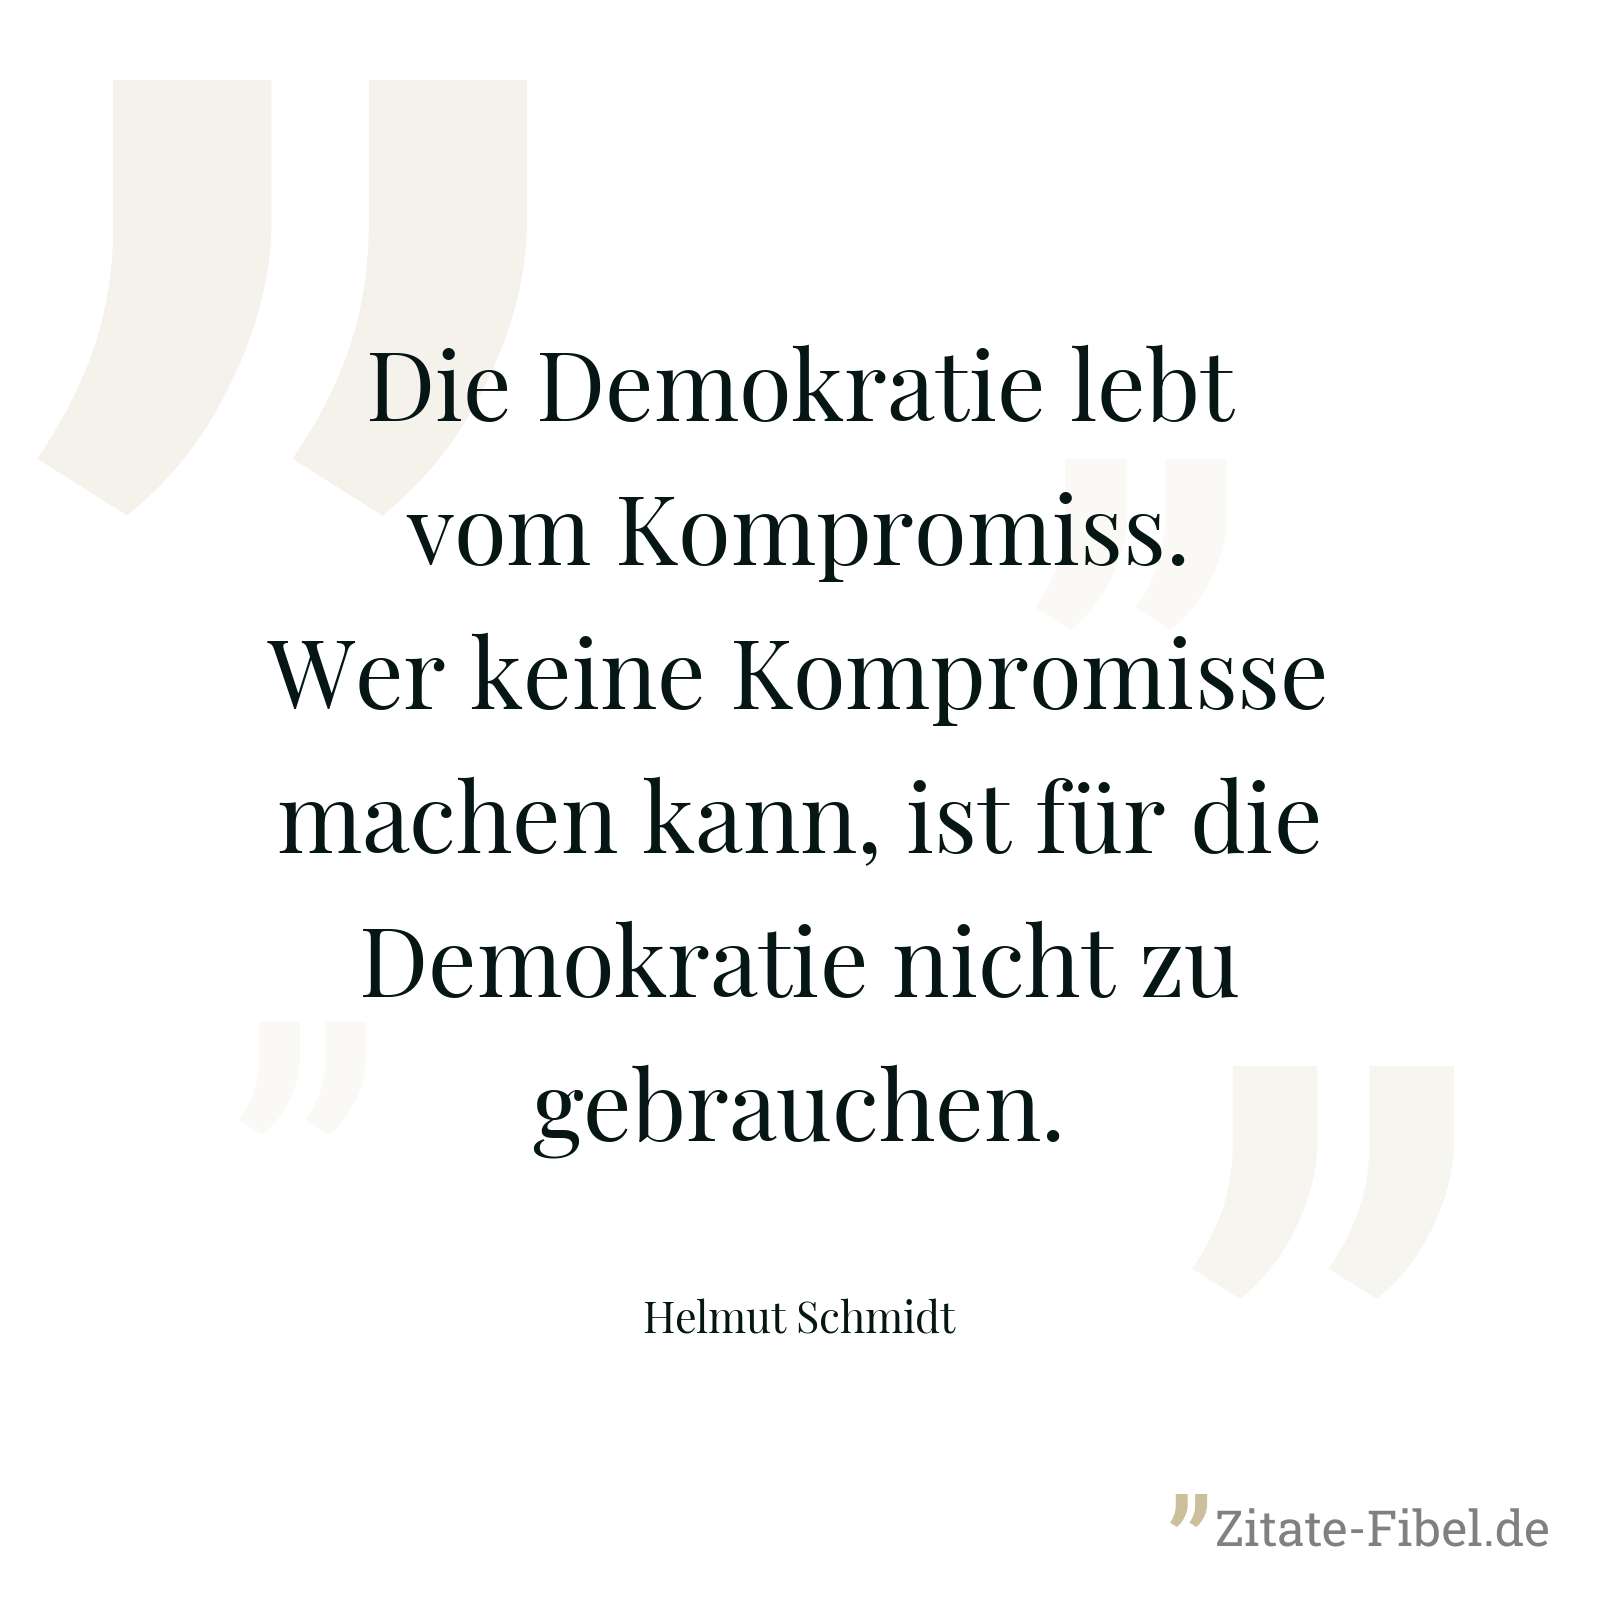 Die Demokratie lebt vom Kompromiss. Wer keine Kompromisse machen kann, ist für die Demokratie nicht zu gebrauchen. - Helmut Schmidt